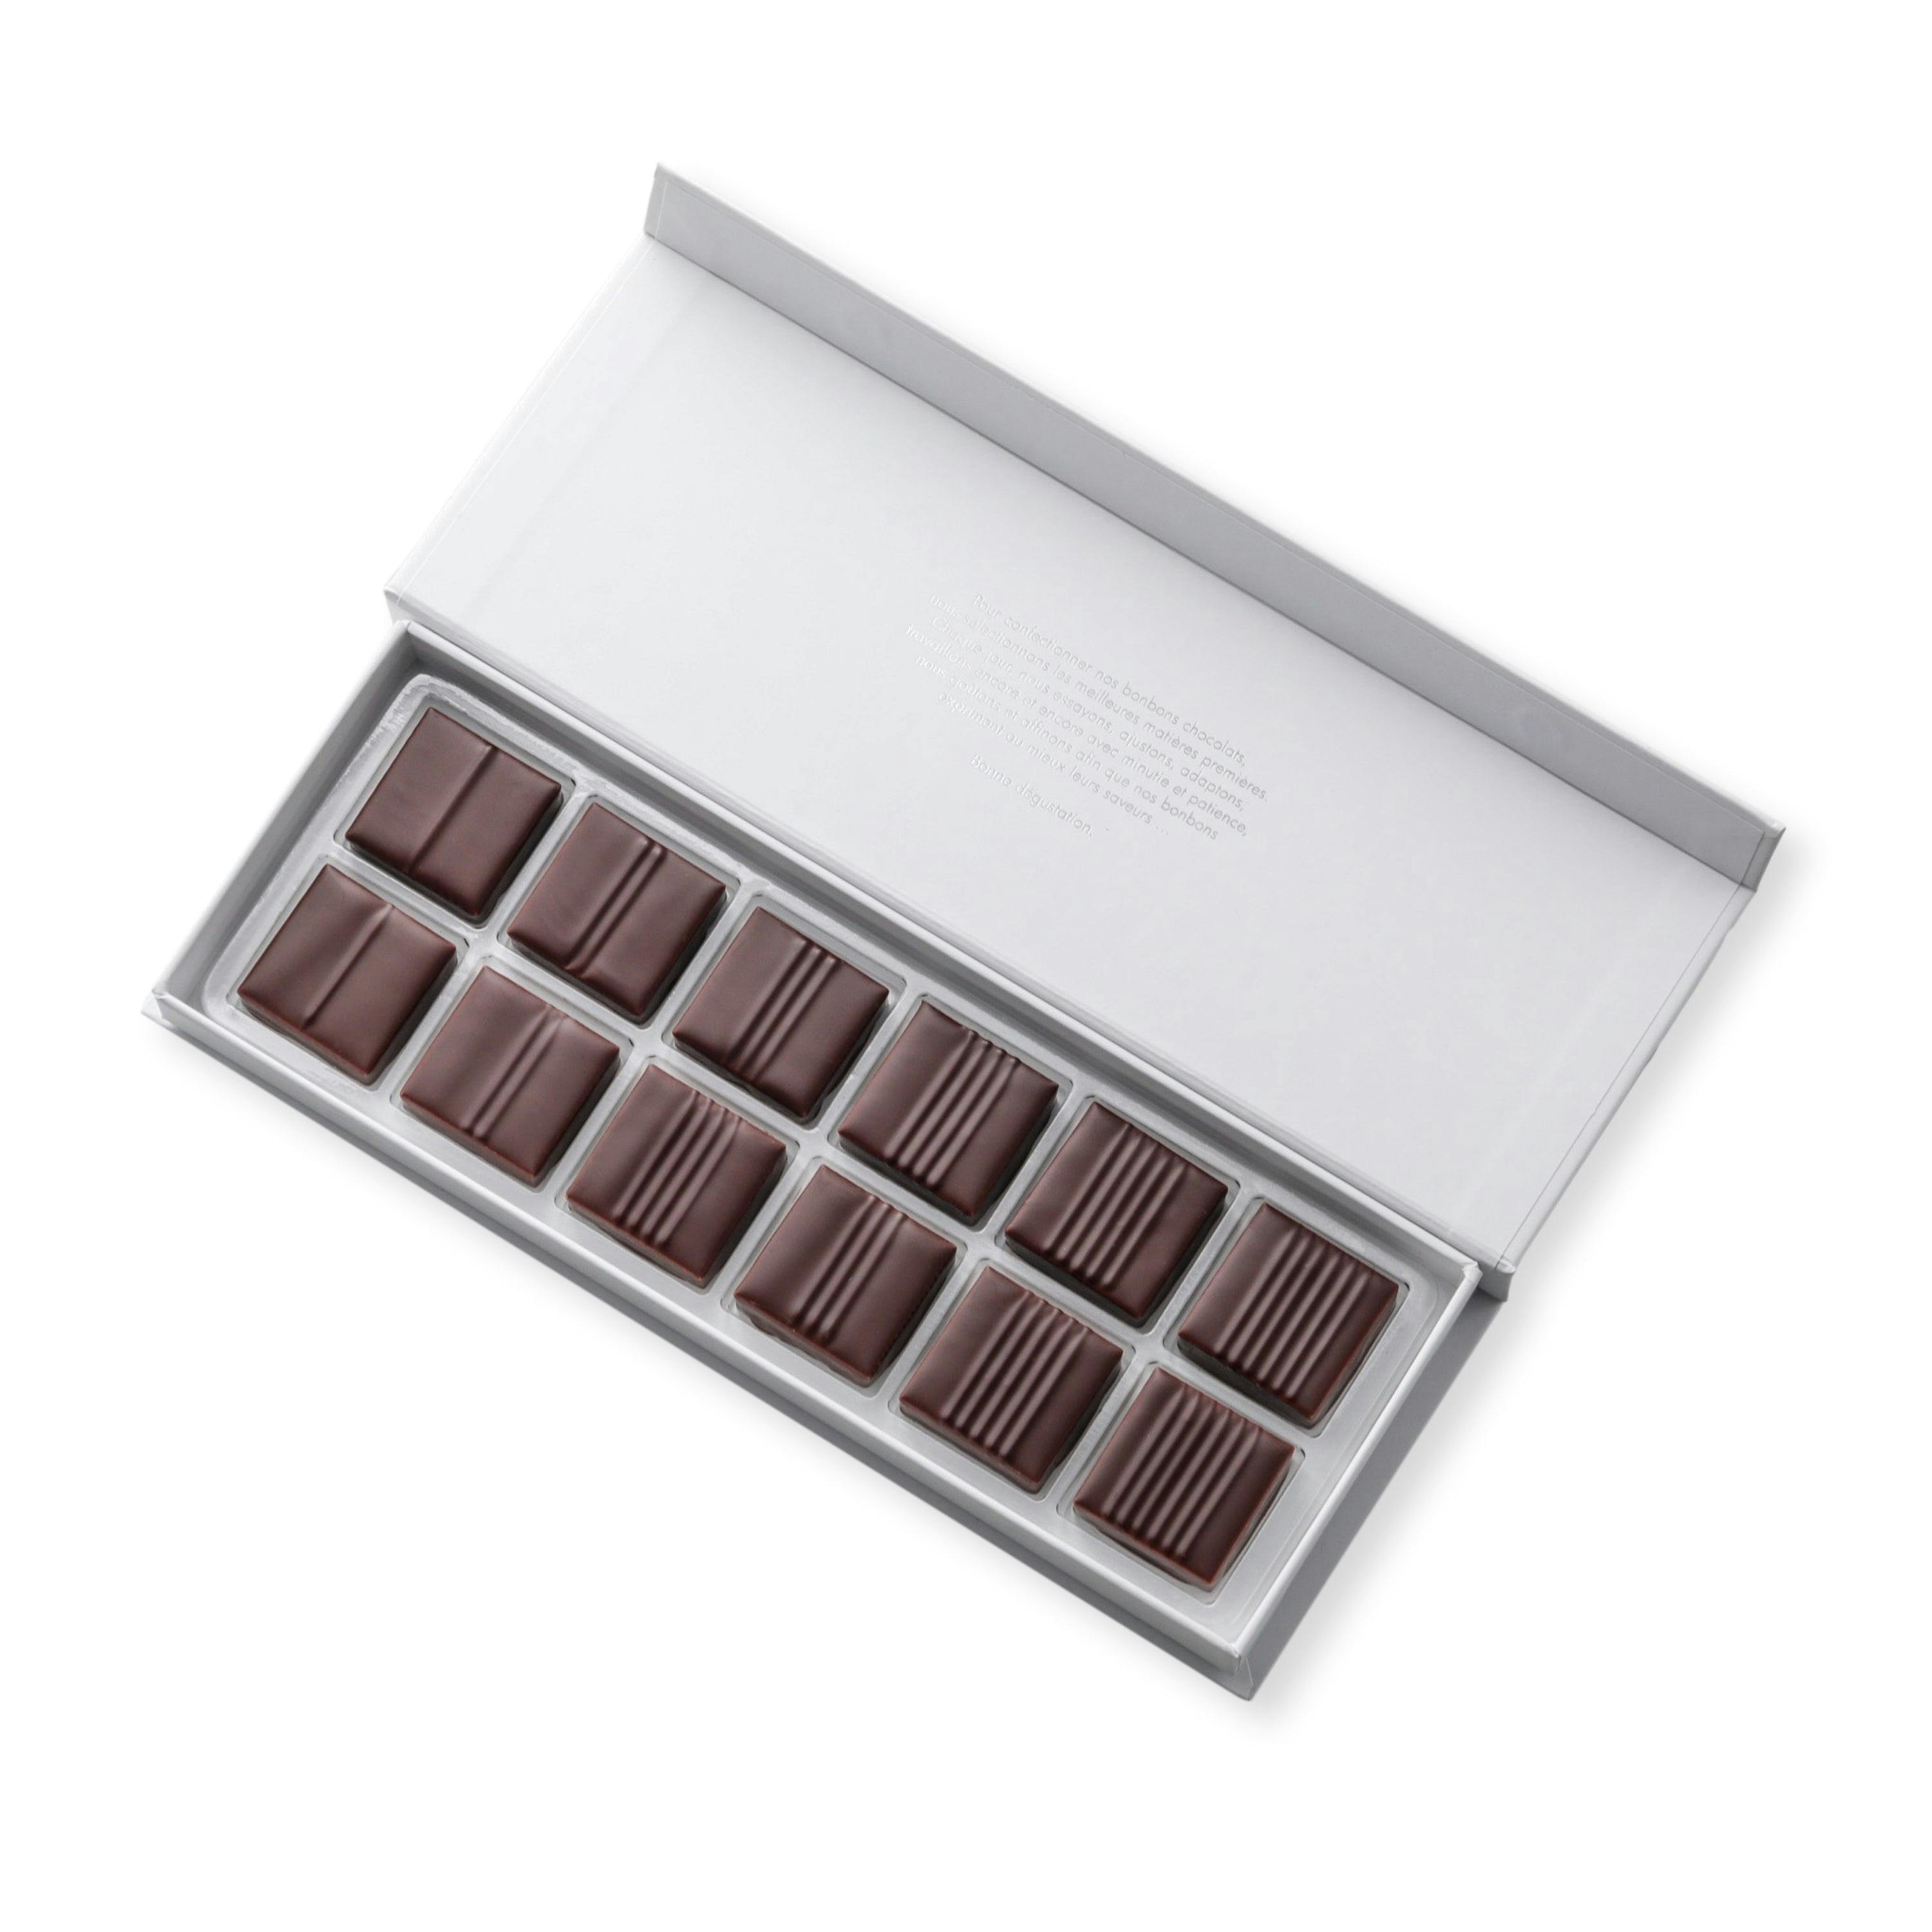 Coffret pralinés croustillants 12 chocolats - Vincent Vallée world champion chocolatier